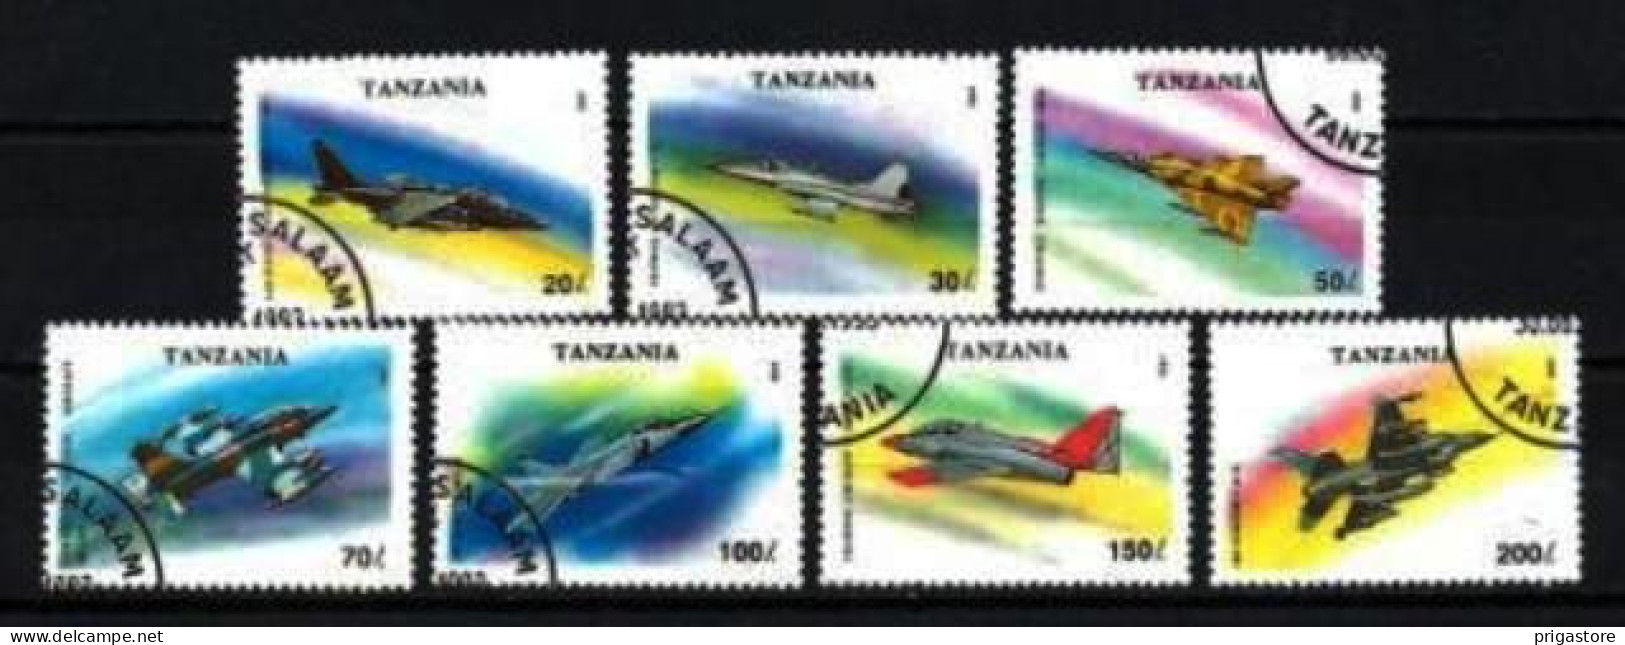 Tanzanie 1994 Avions (50) Yvert N° 1456 à 1462 Oblitéré Used - Tanzania (1964-...)